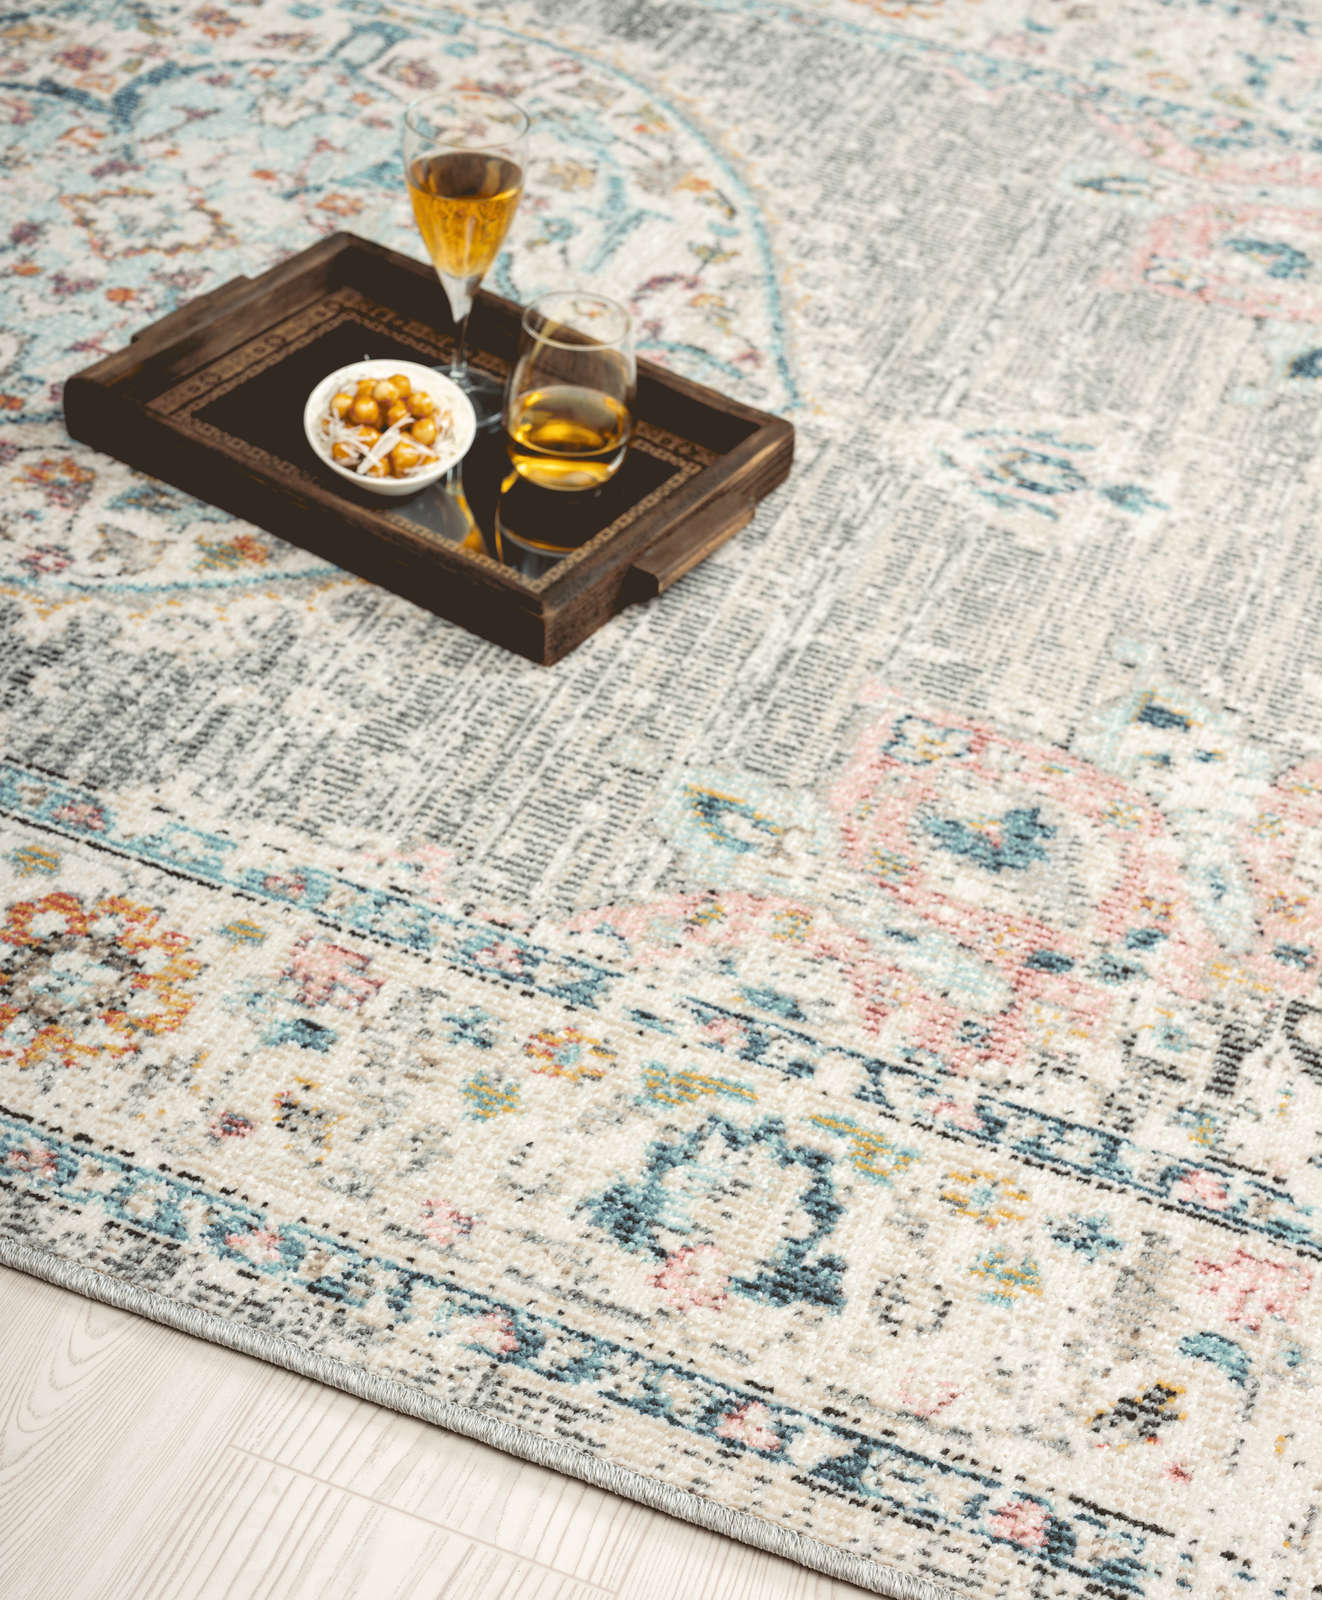             Grauer Teppich aus Flachgewebe als Läufer – 300 x 80 cm
        